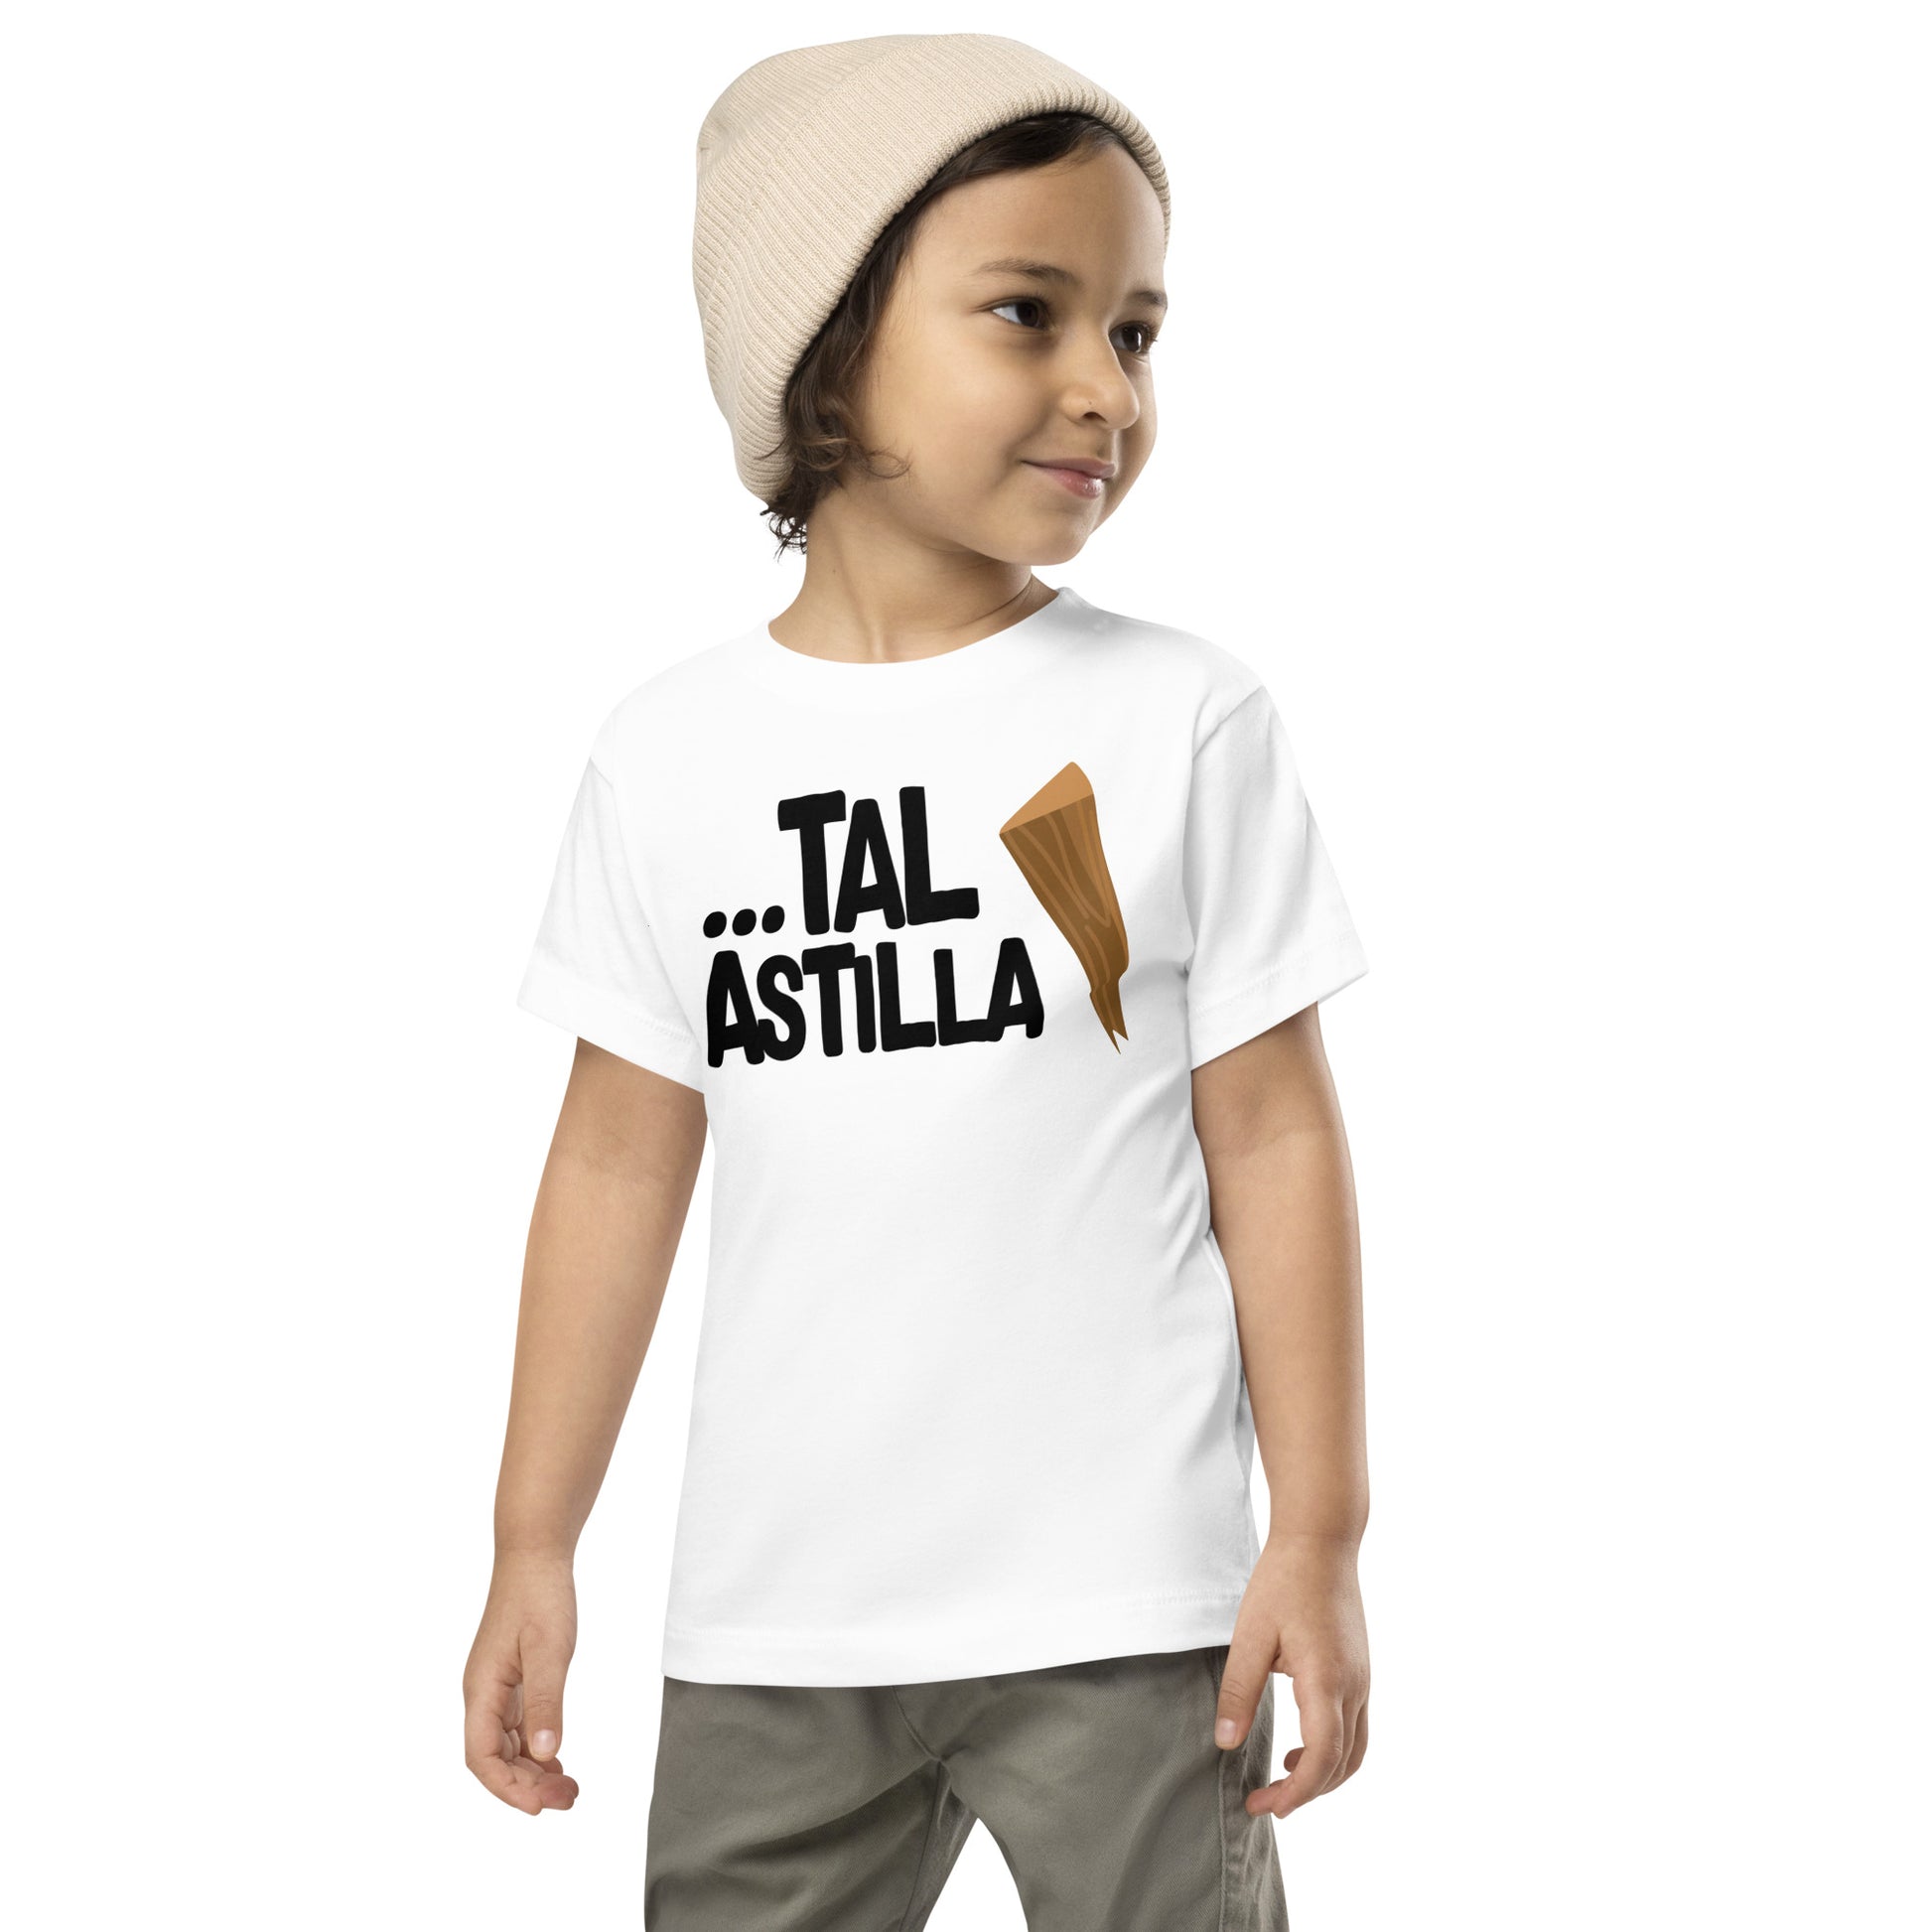 Camiseta de Niño Tal Astilla. Color Blanco.